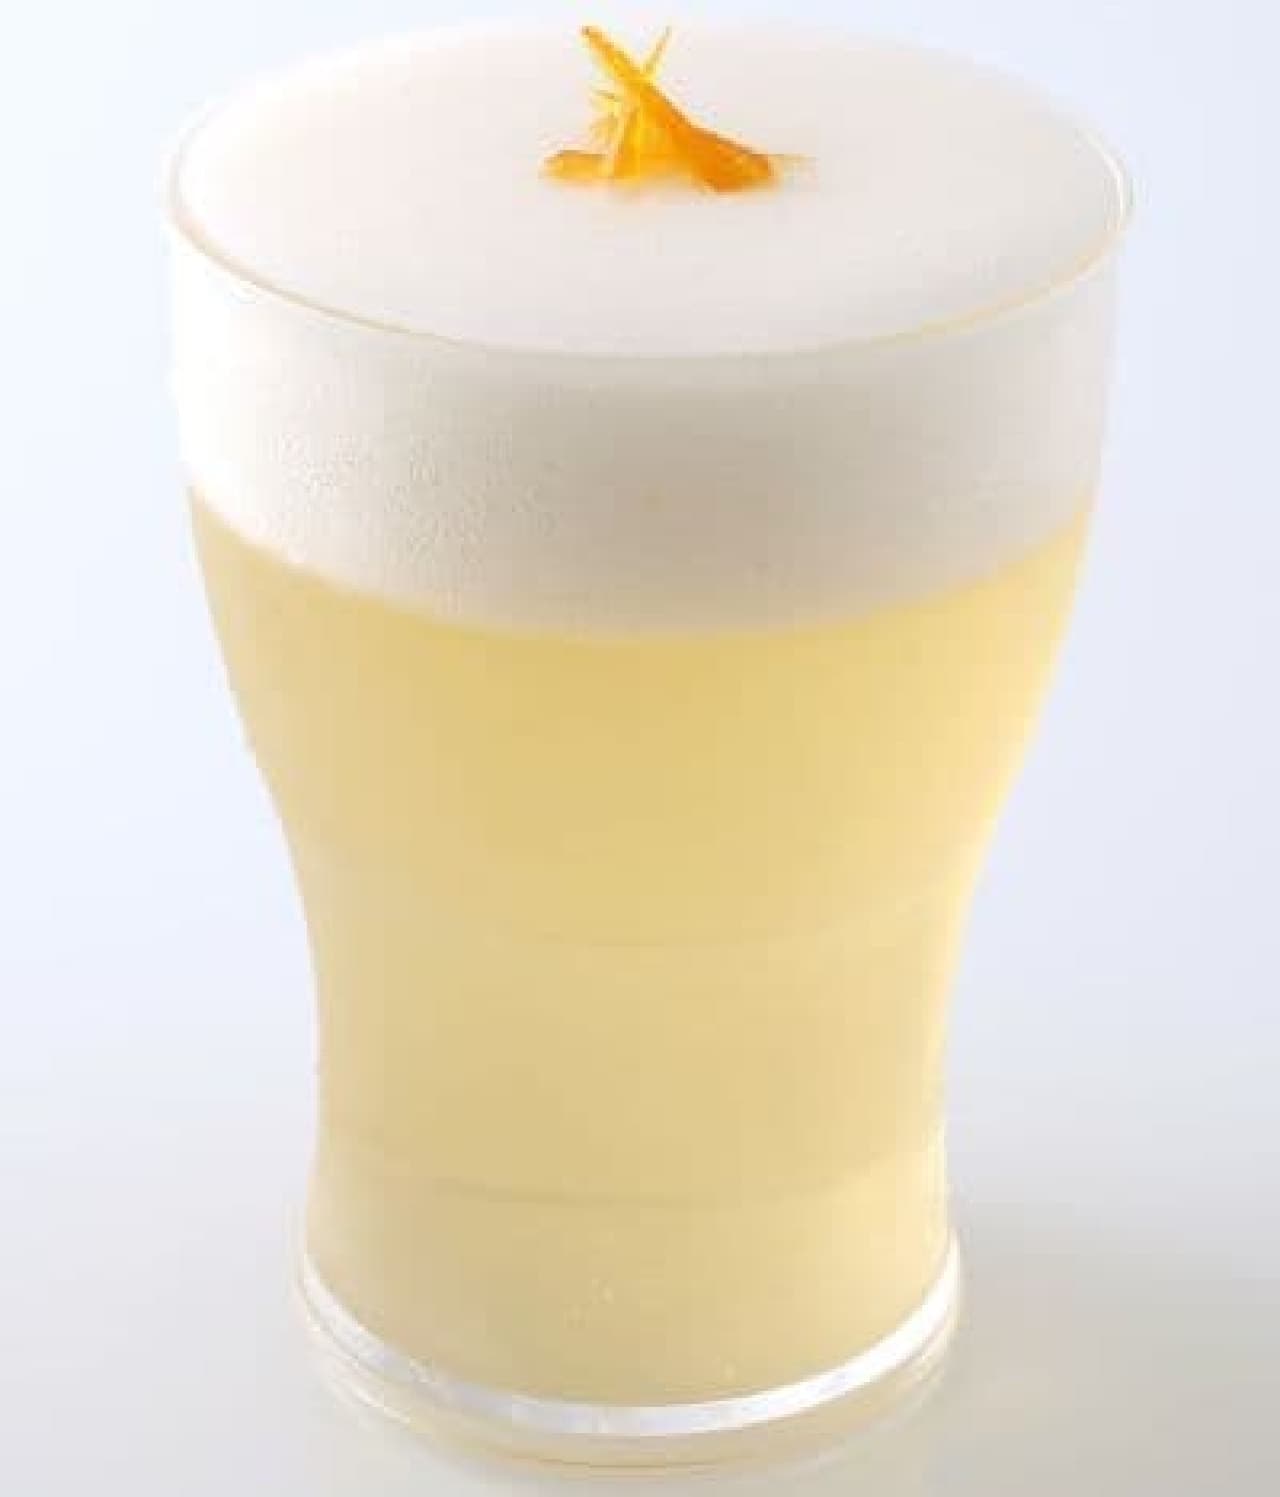 ヴィタメール「ベルギービアゼリー」は、ホワイトビール“ヒューガルデン・ホワイト”を使用したビアゼリー